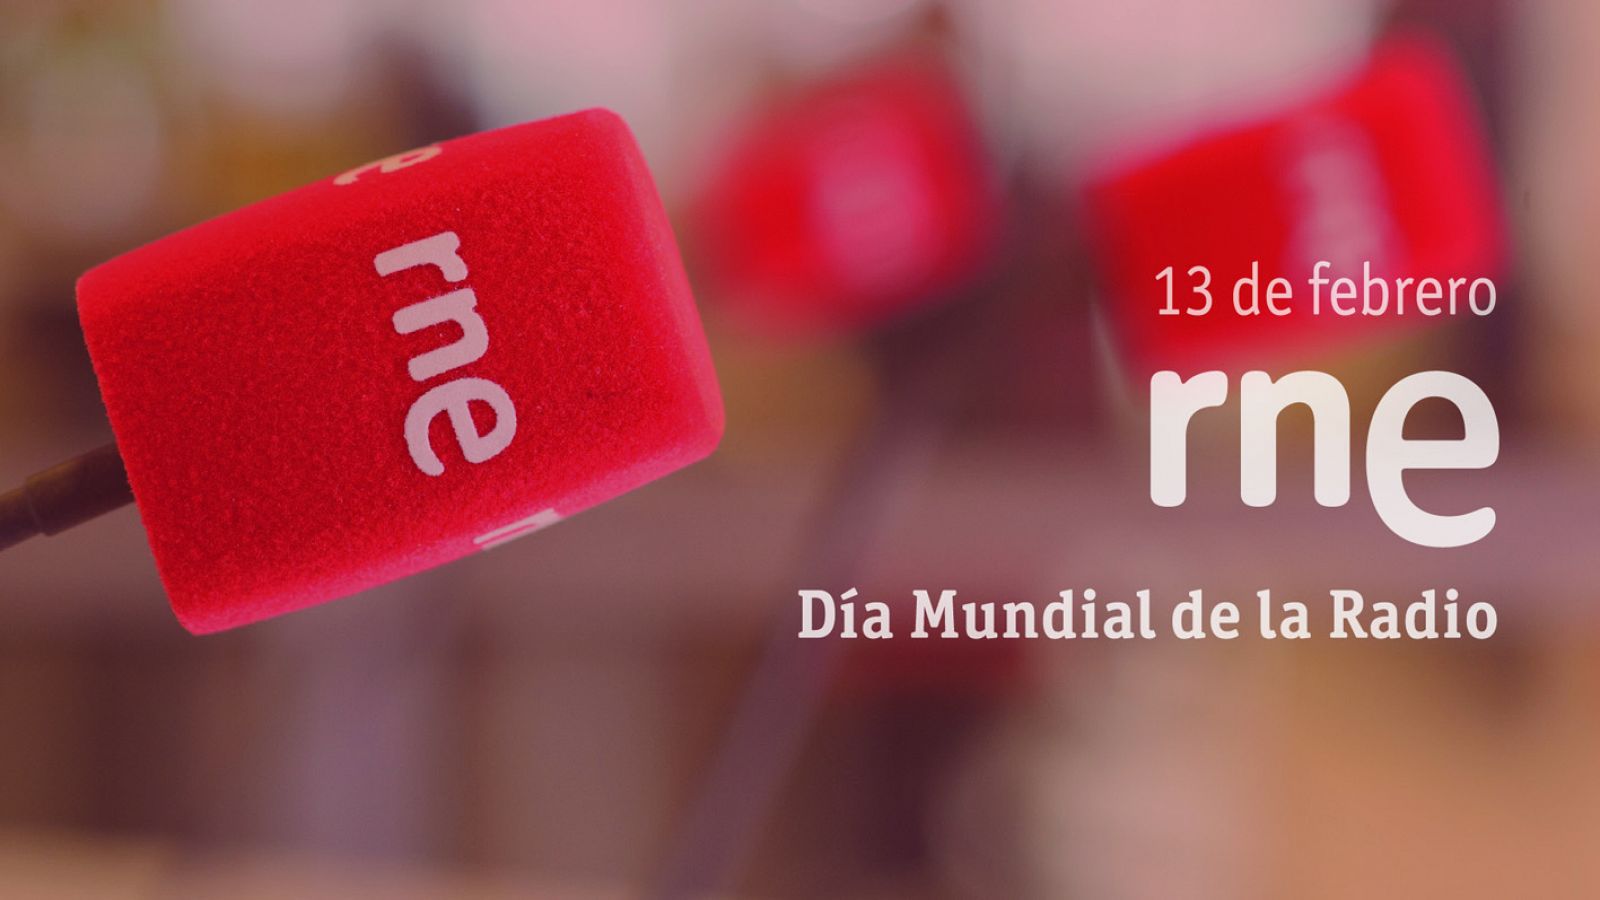 RNE invita a los oyentes a celebrar el Día Mundial de la Radio con una programación especial en directo y con público